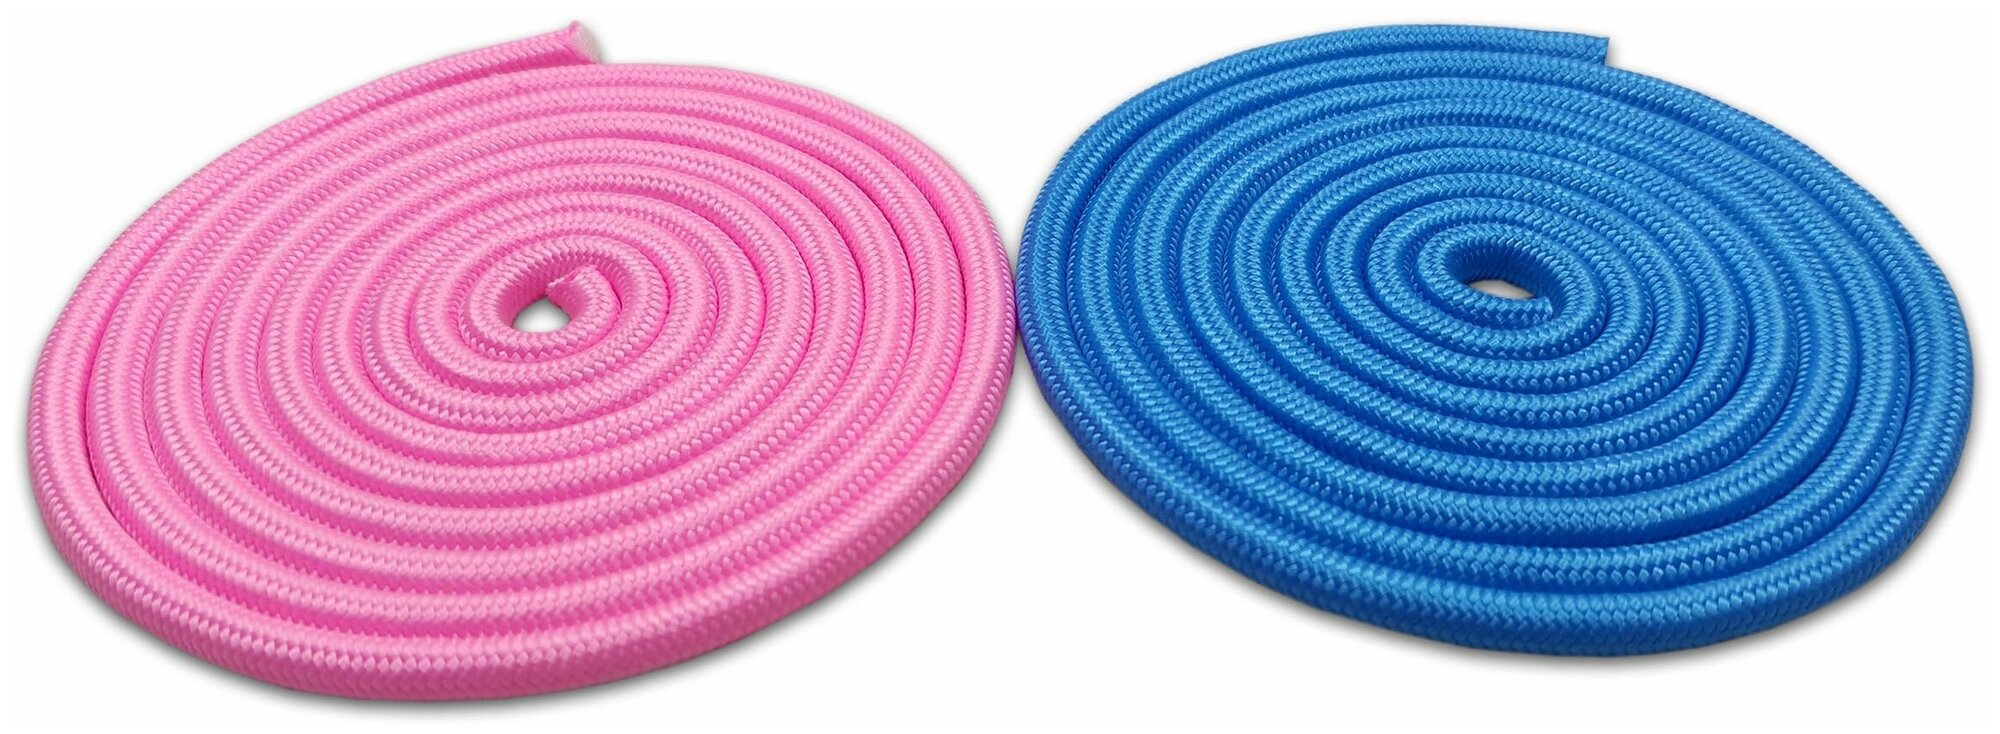 Две гимнастические скакалки розовая и голубая (3 метра)